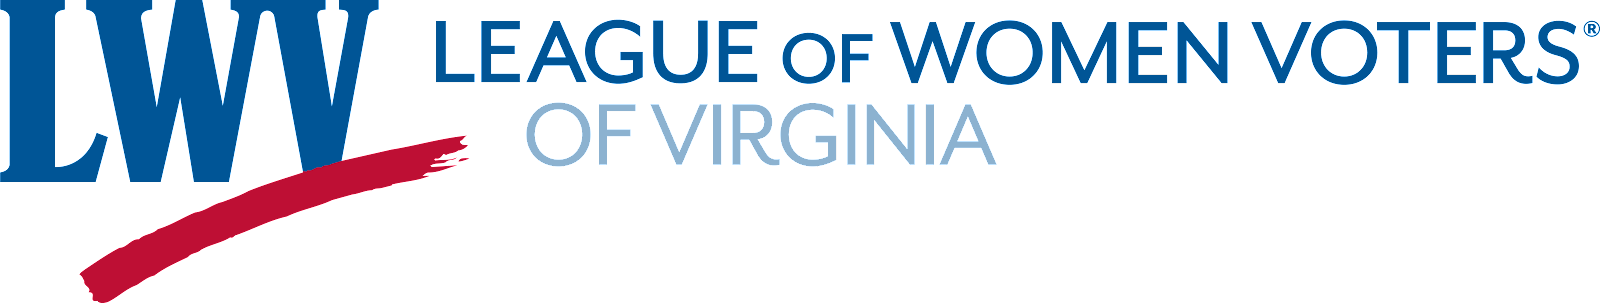 League of Women Voters of Virginia